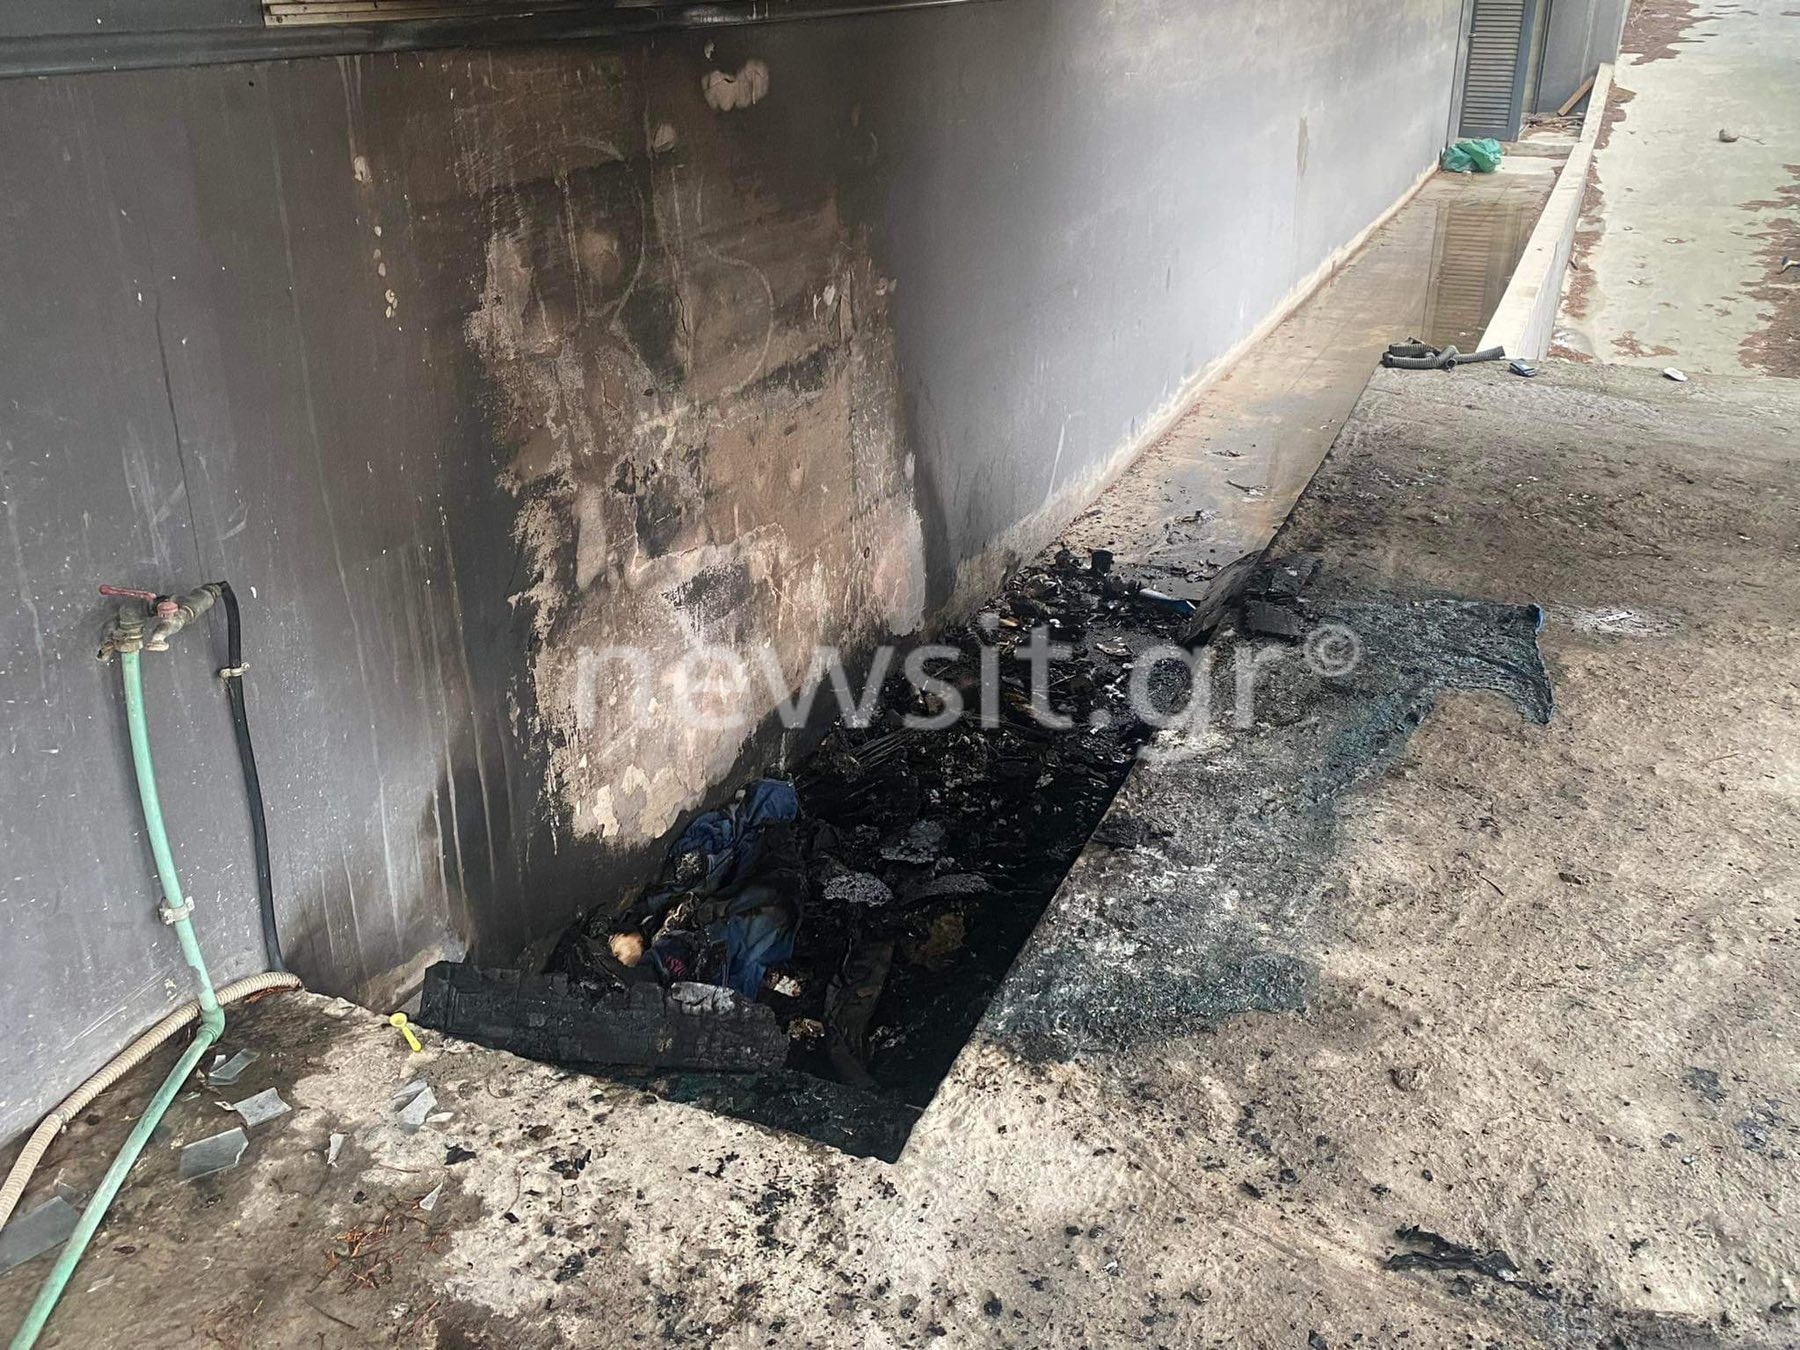 Θεσσαλονίκη: Ένας νεκρός μετά από φωτιά σε αυλή εγκαταλελειμμένου κτιρίου